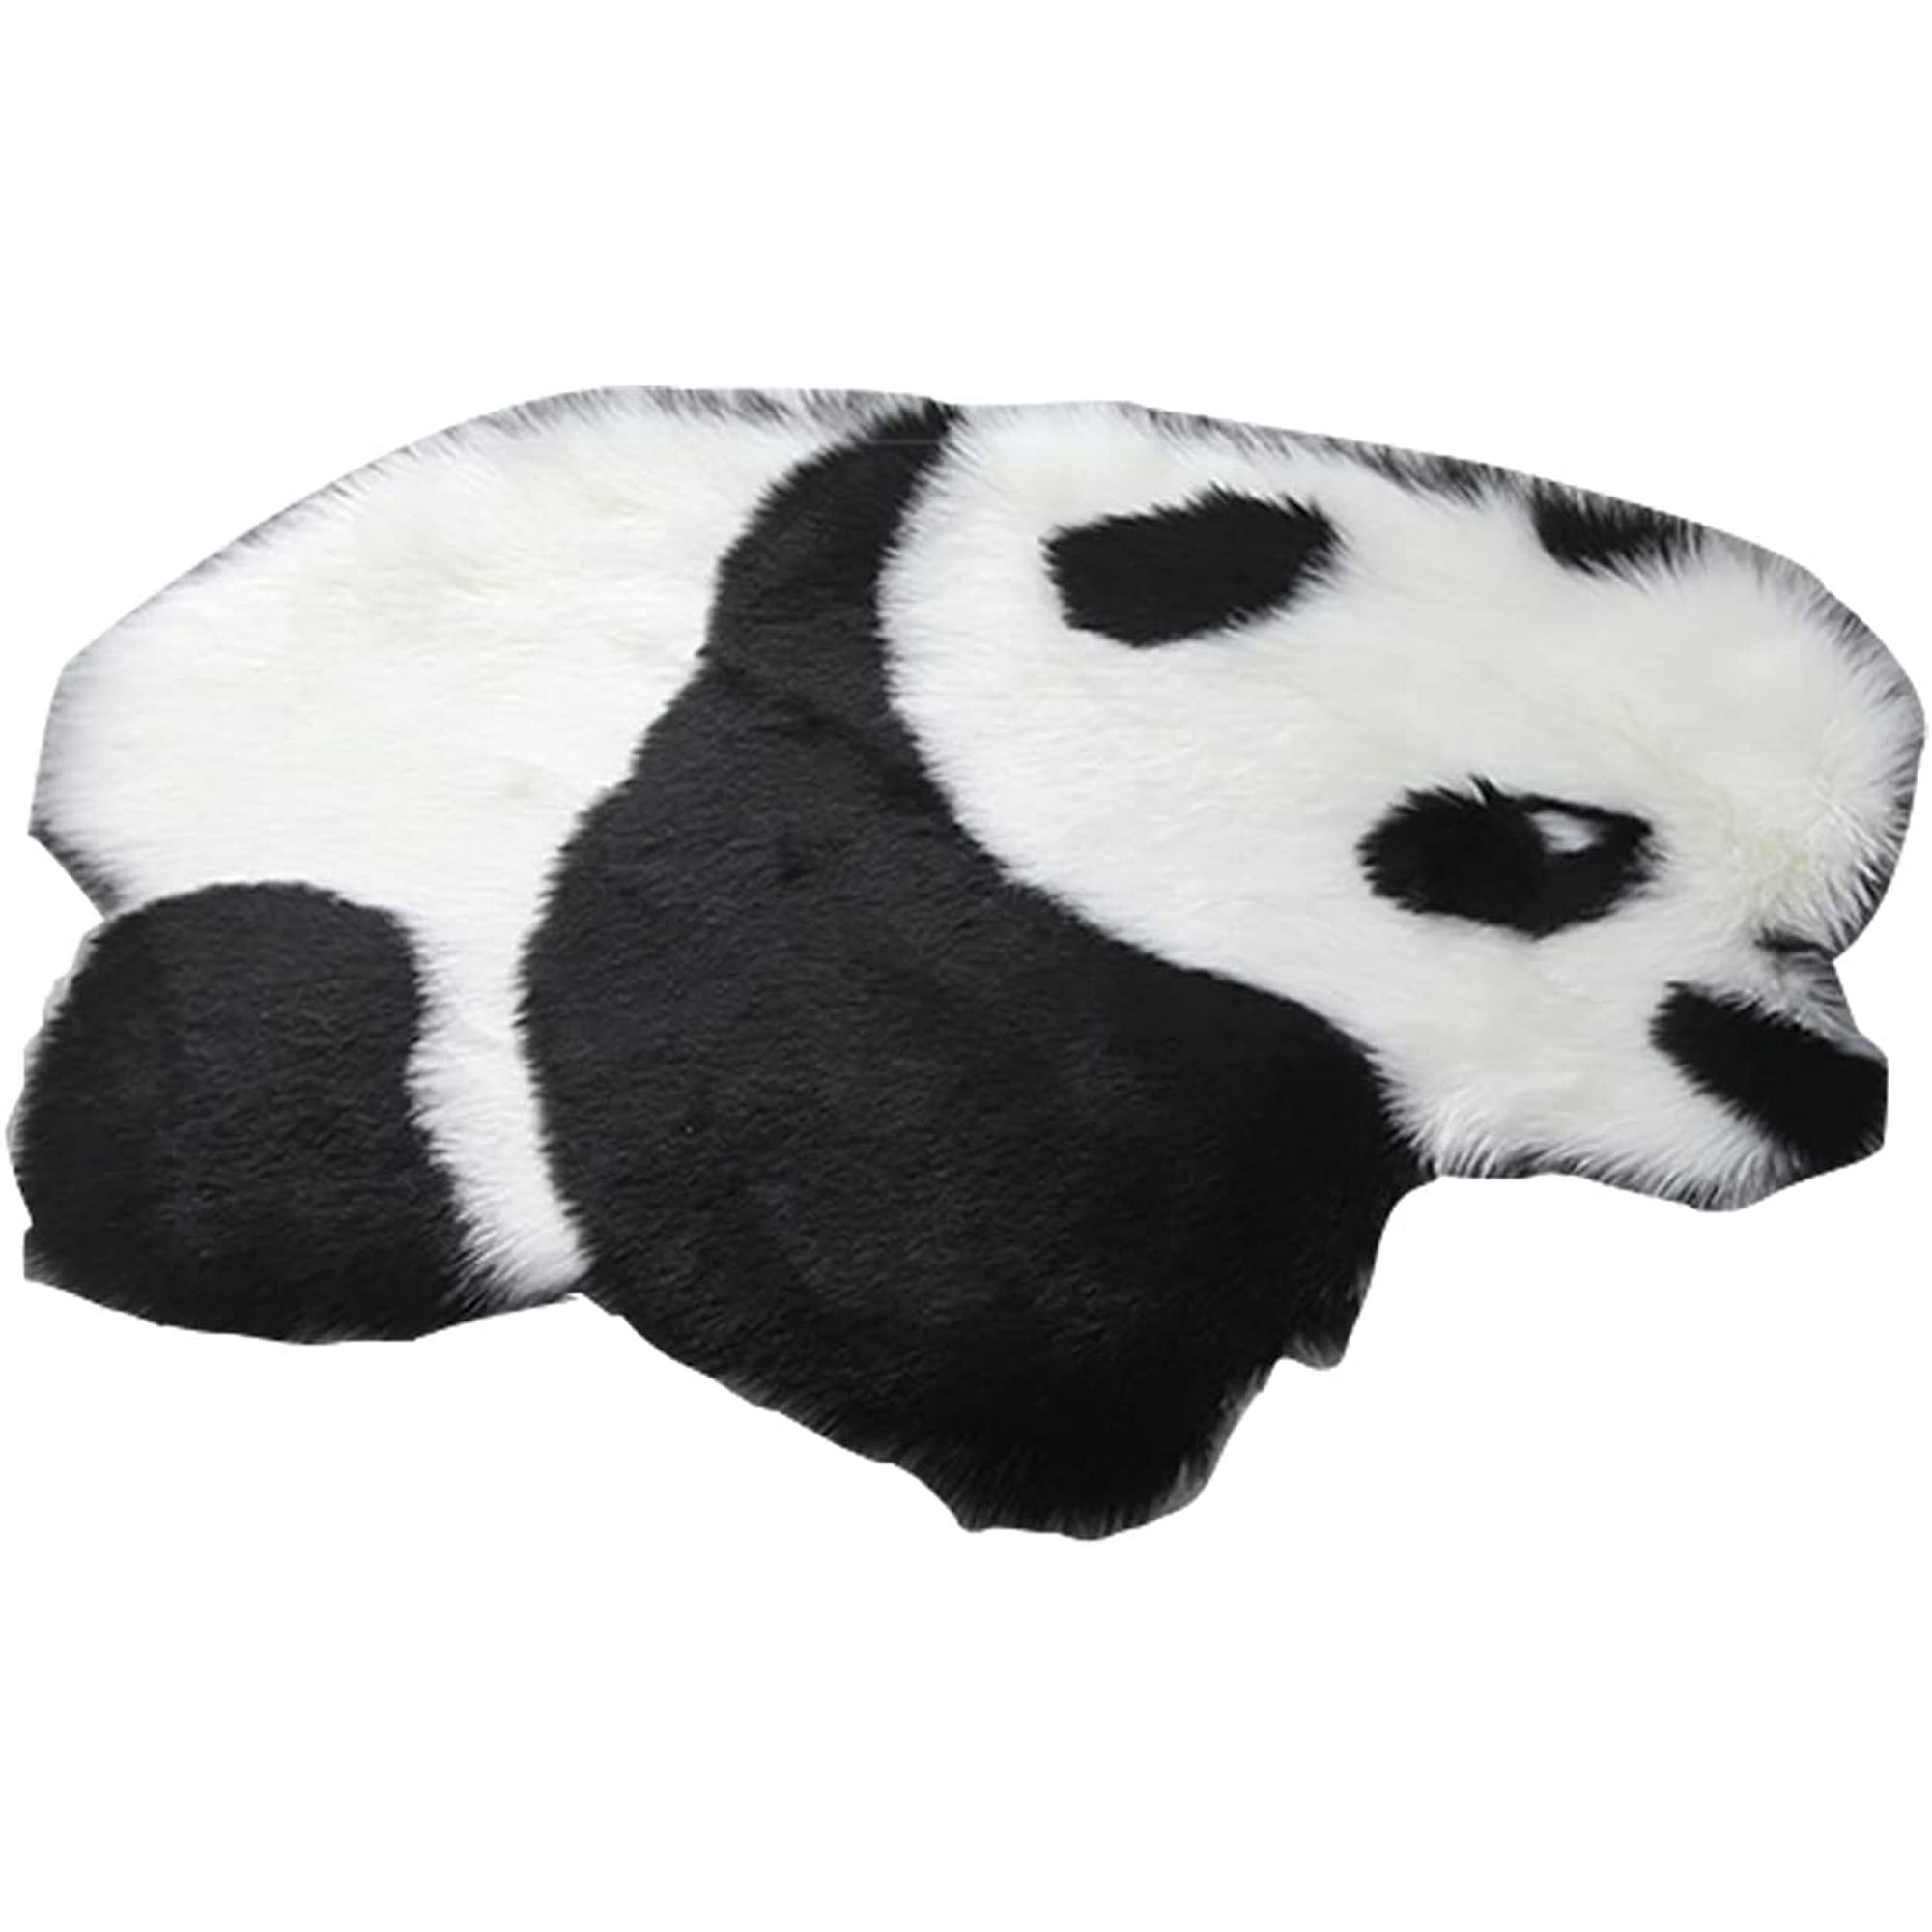 Cute Animal Shaped Rug Artificial Sheepskin Fluffy Panda Koala ...